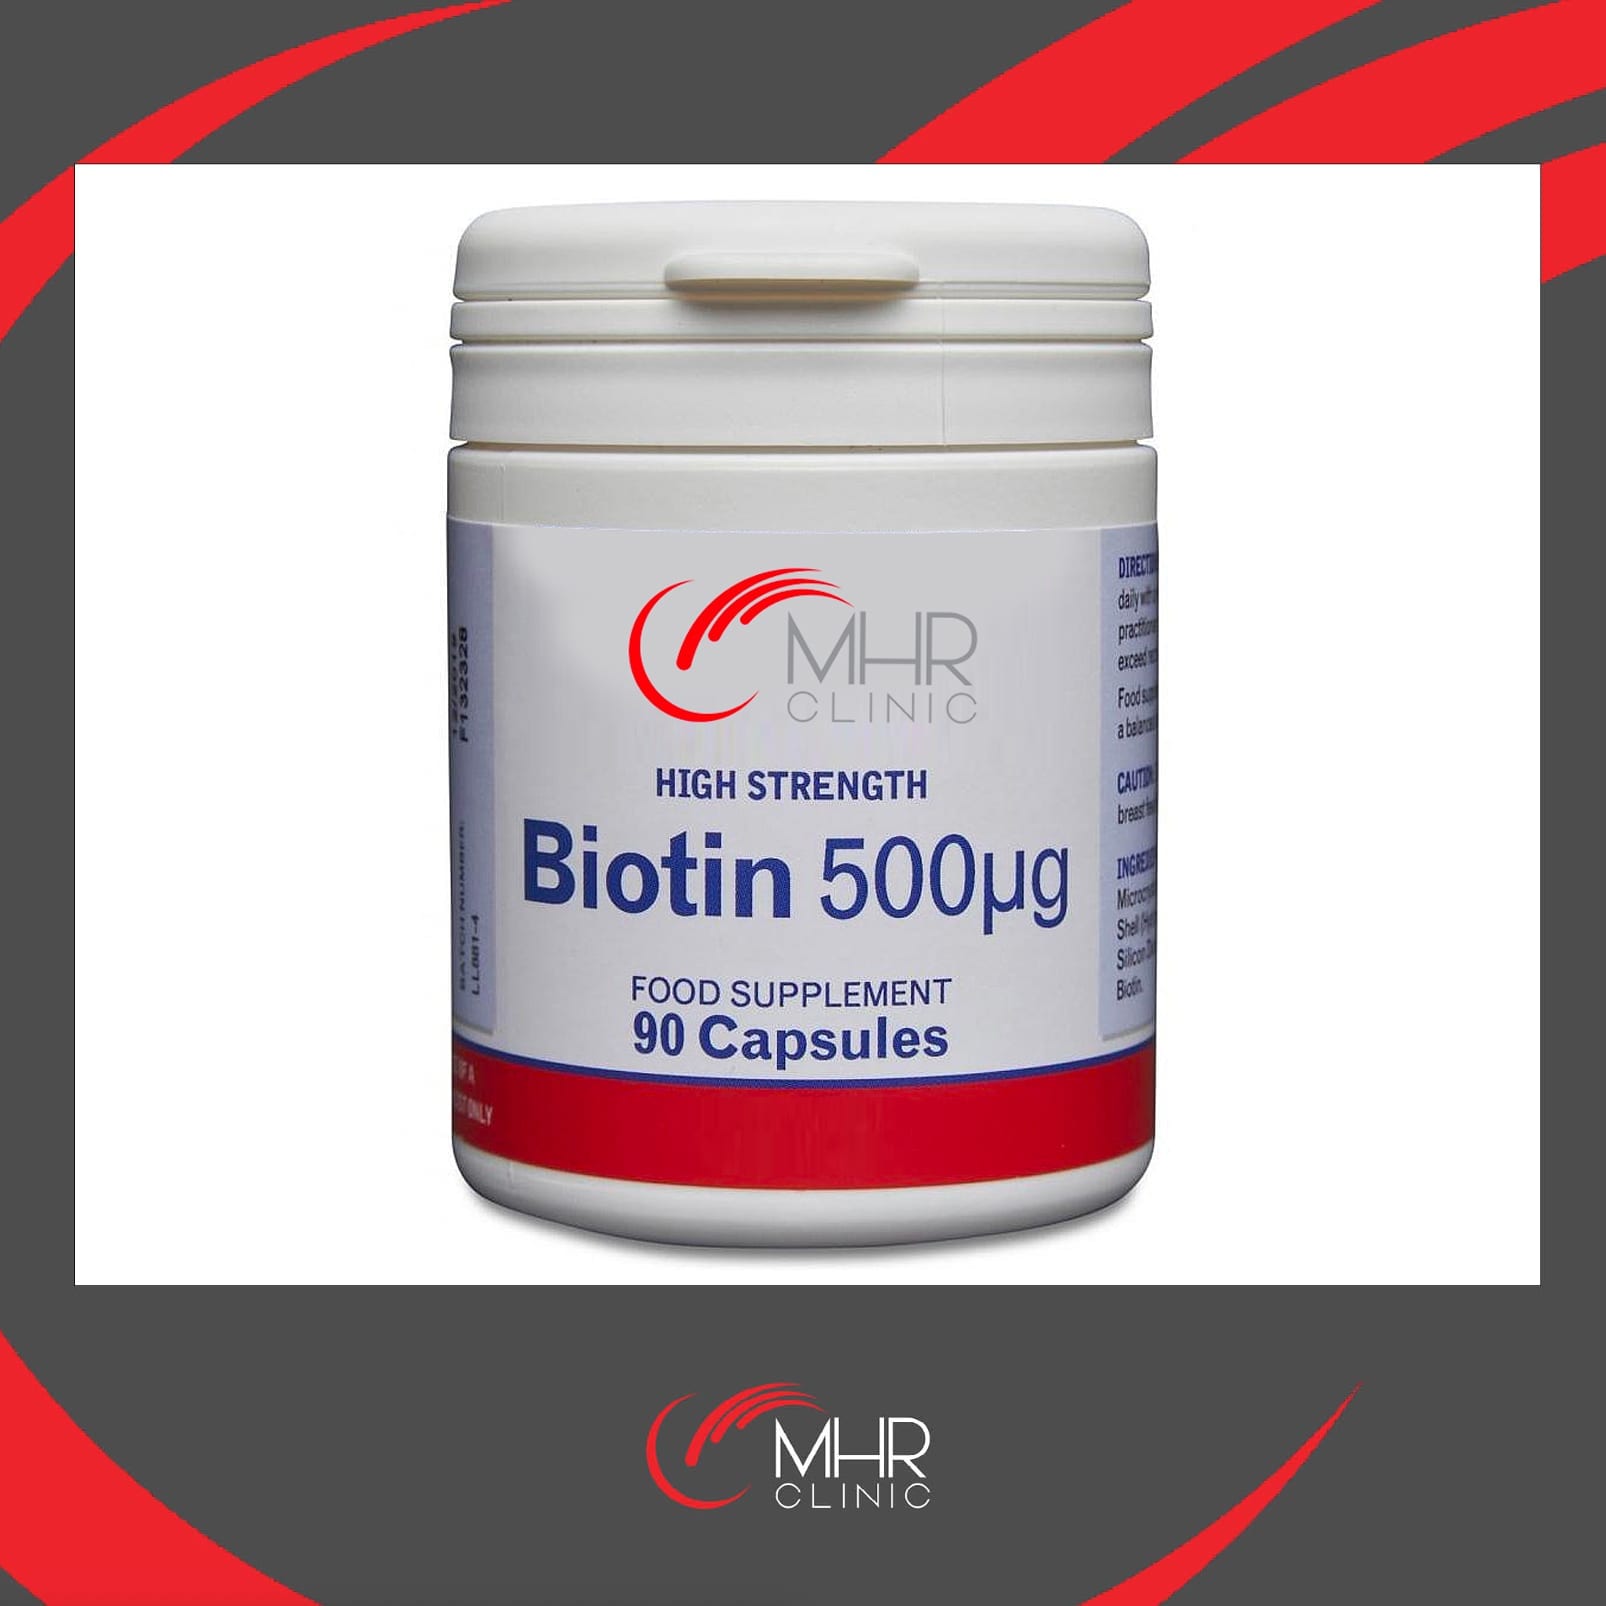 Biotin: The supplement of supplements